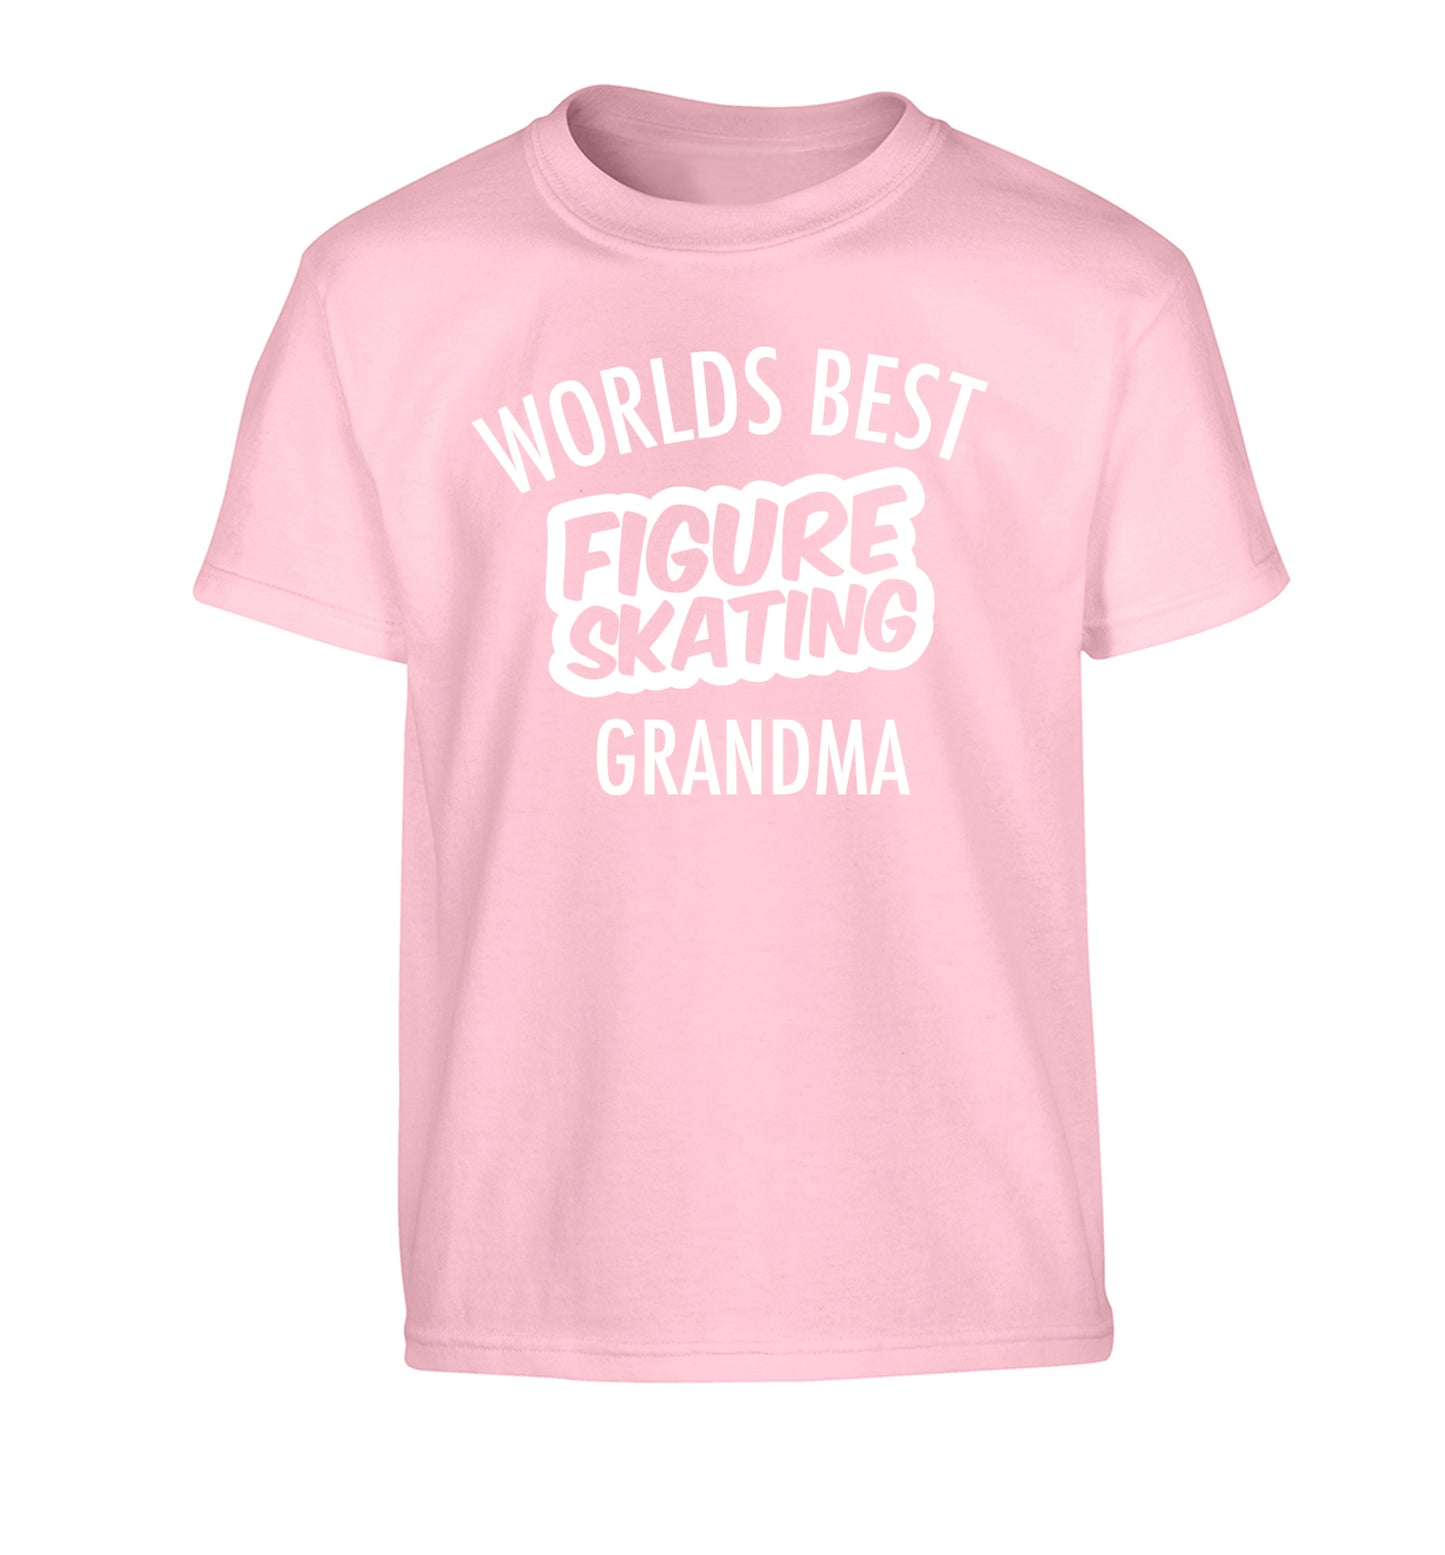 Worlds best figure skating grandma Children's light pink Tshirt 12-14 Years